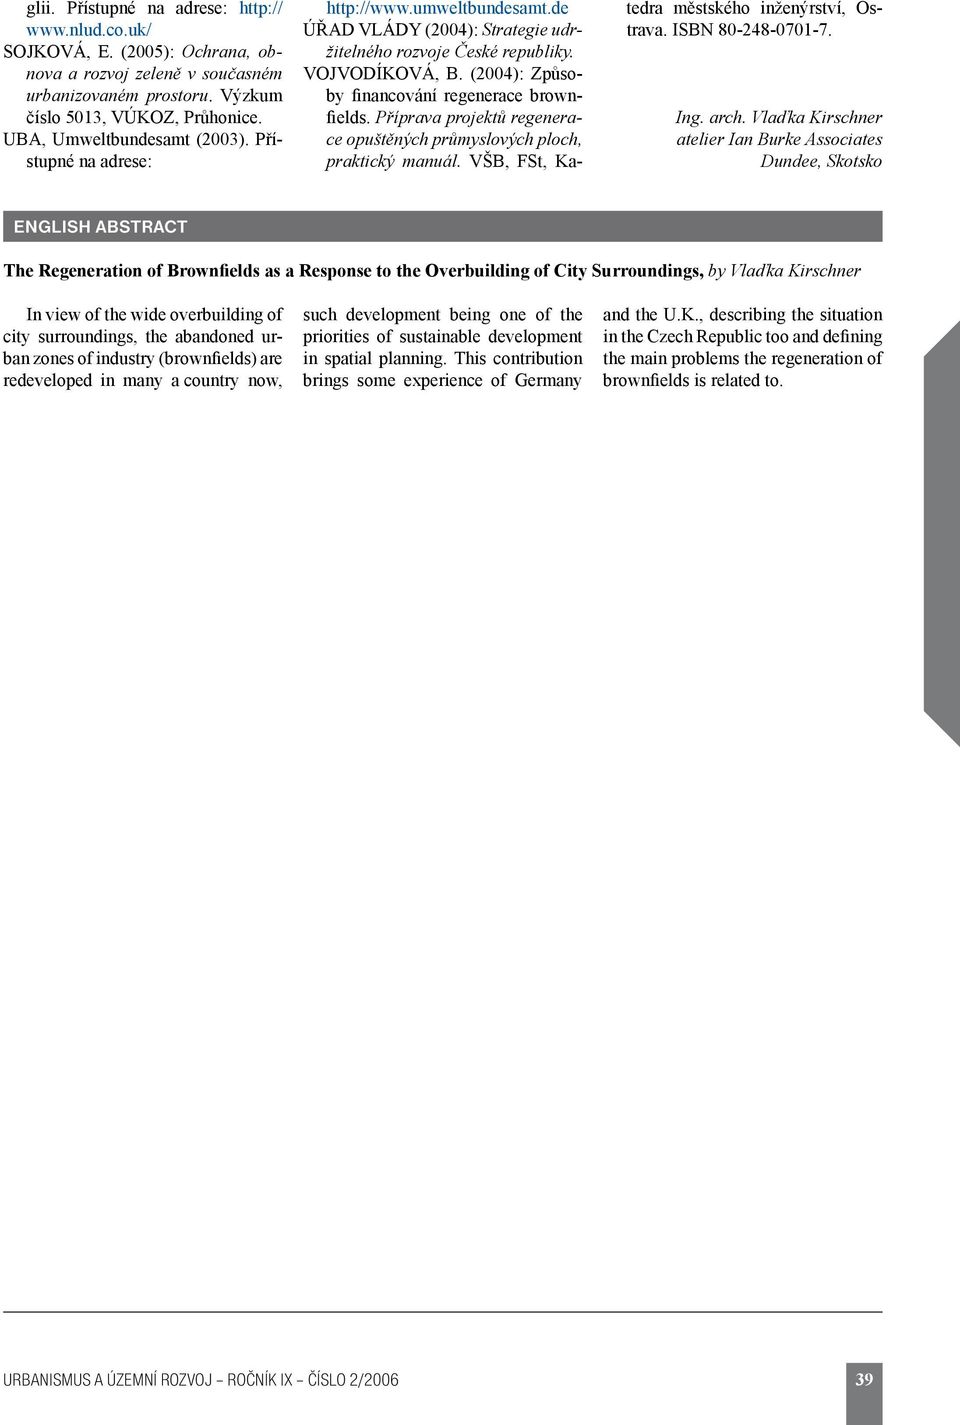 (2004): Způsoby financování regenerace brownfields. Příprava projektů regenerace opuštěných průmyslových ploch, praktický manuál. VŠB, FSt, Katedra městského inženýrství, Ostrava. ISBN 80-248-0701-7.